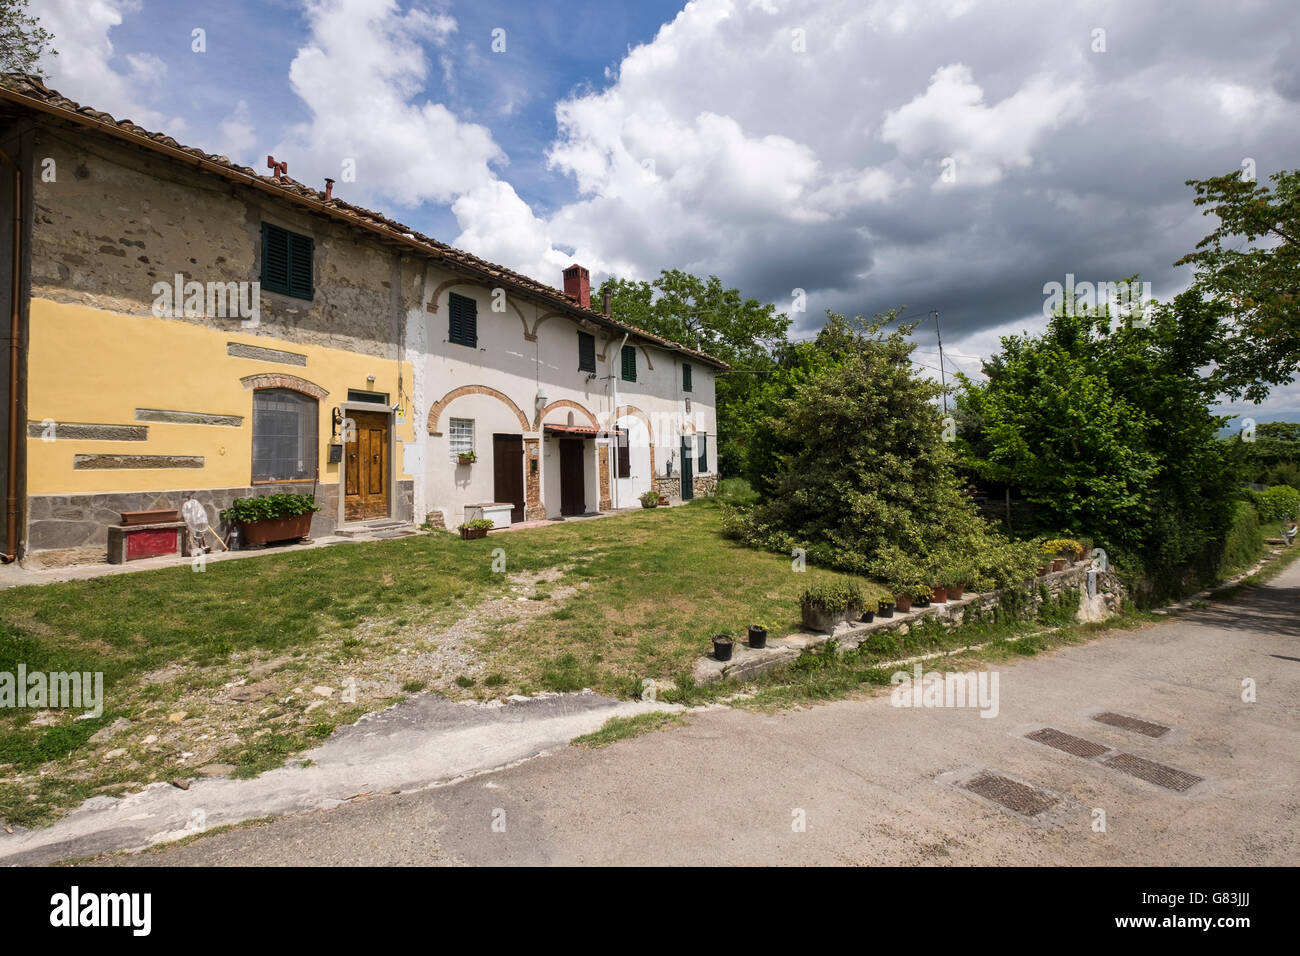 Rangée de maisons anciennes rénovées sur la Via Lumena près de Sant Agata, Toscane, Italie Banque D'Images